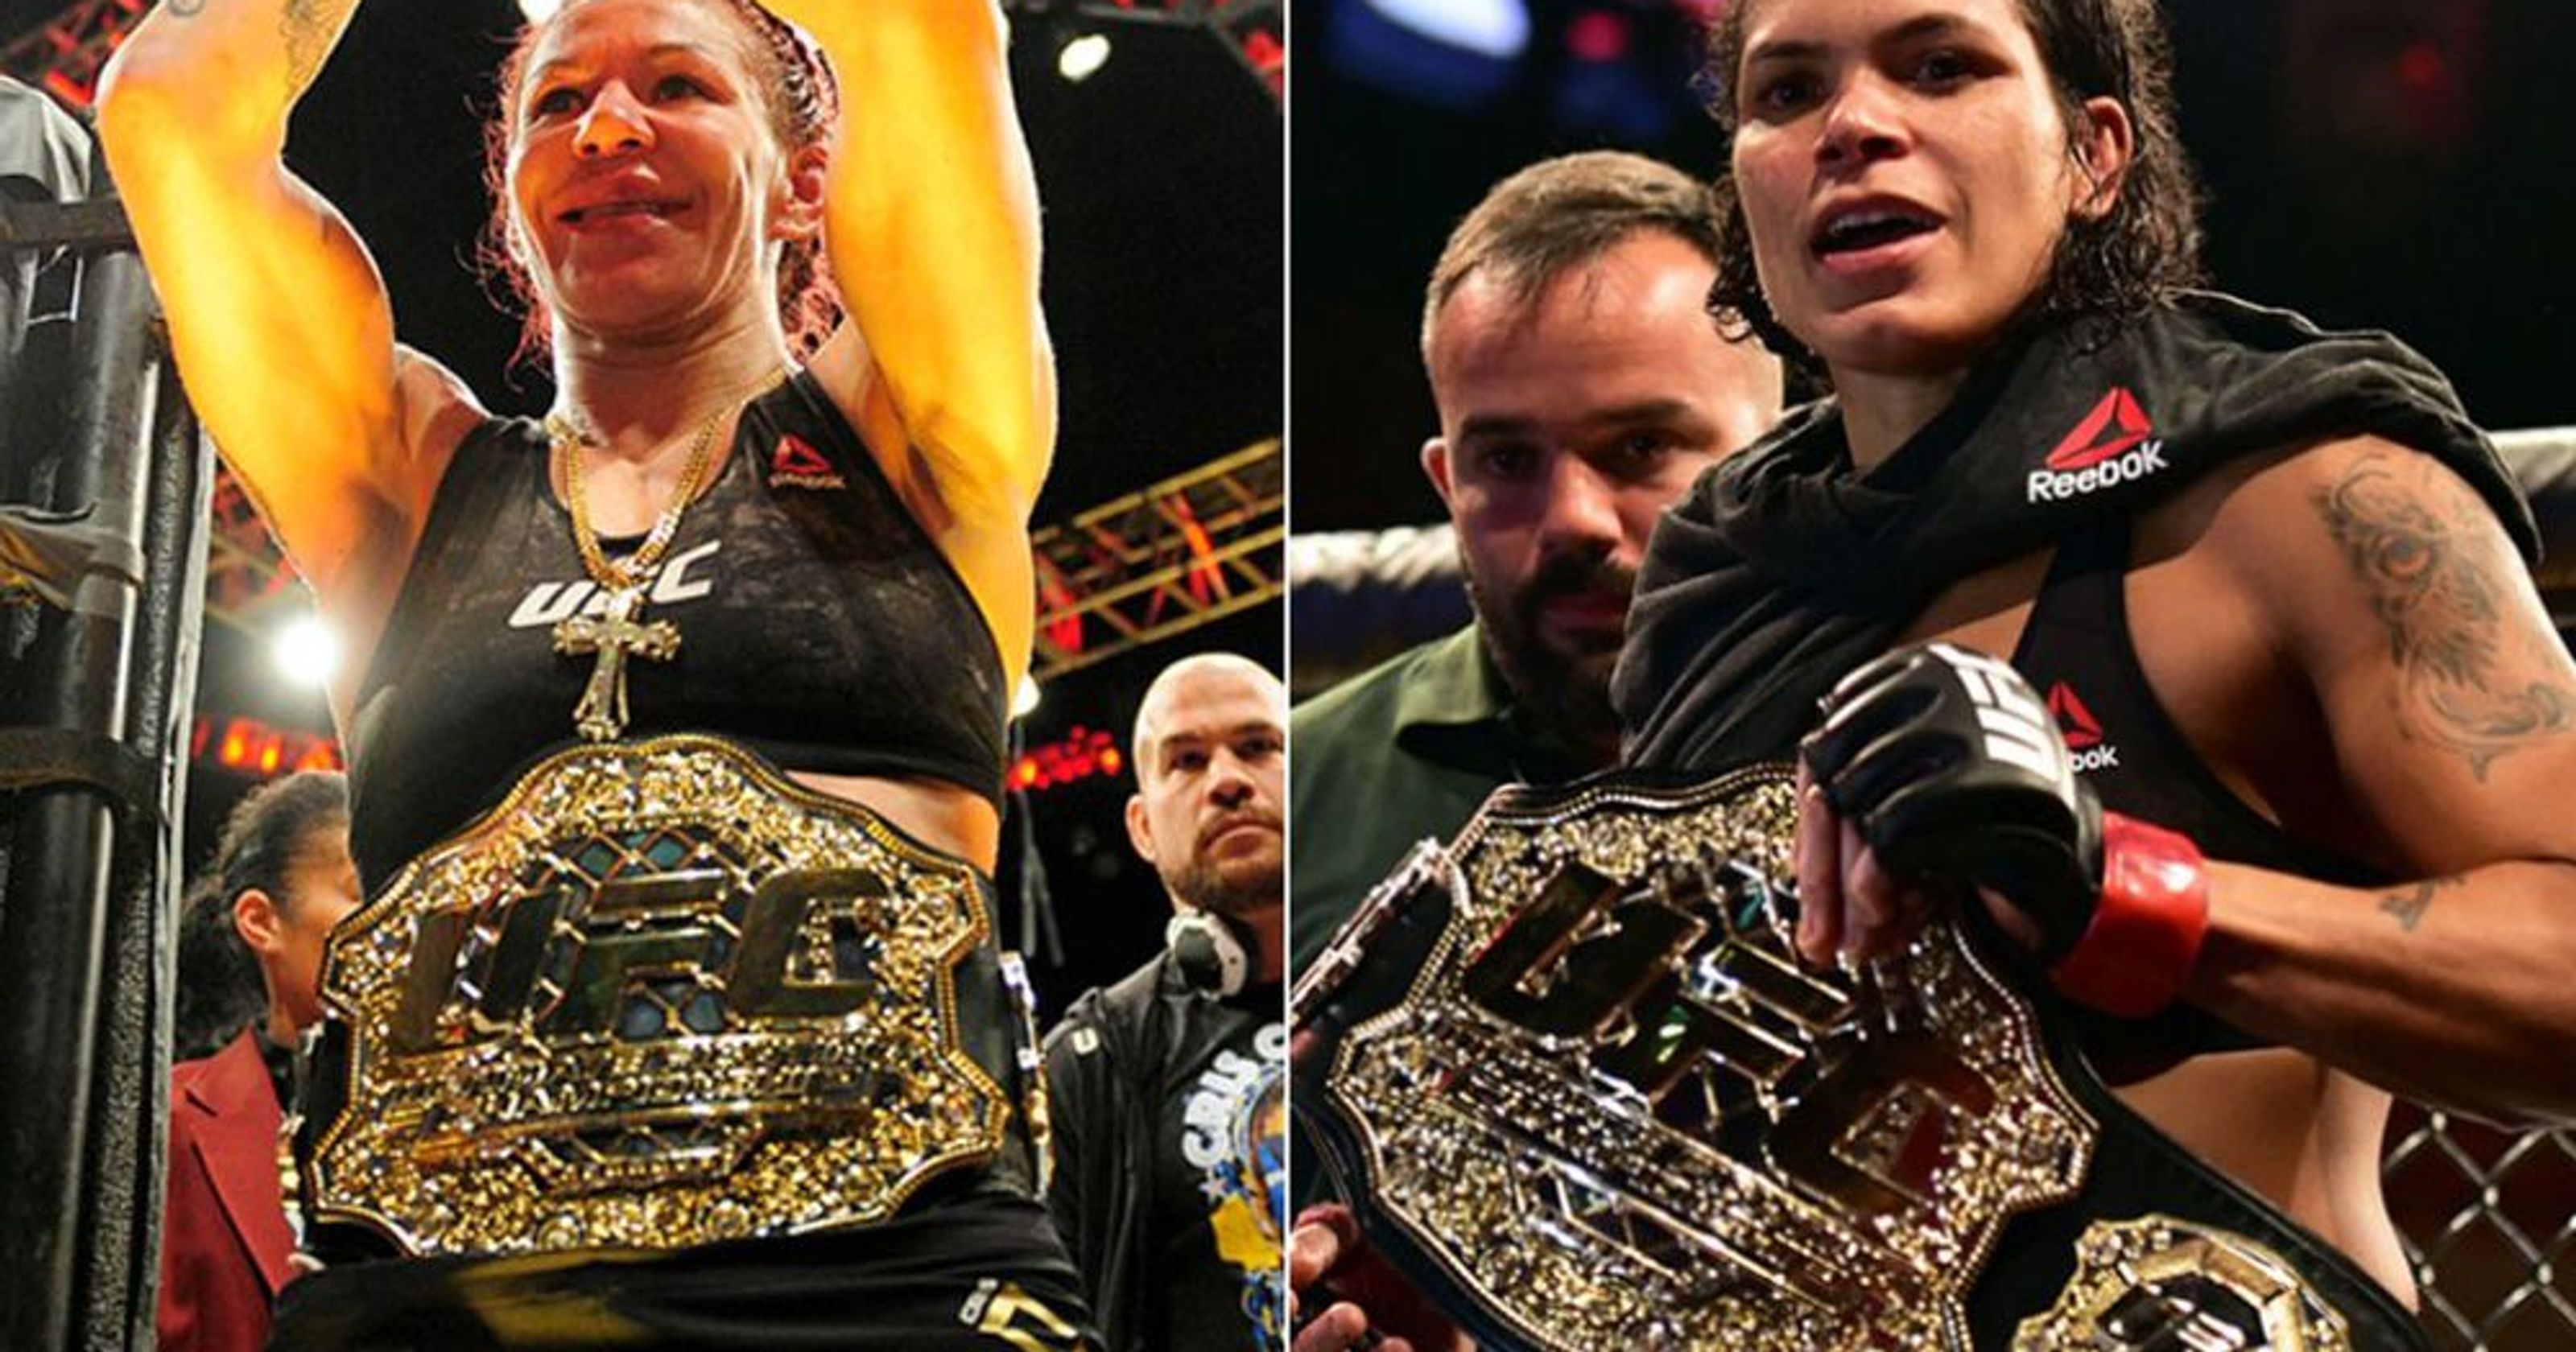 Cris Cyborg to face Amanda Nunes in UFC 232